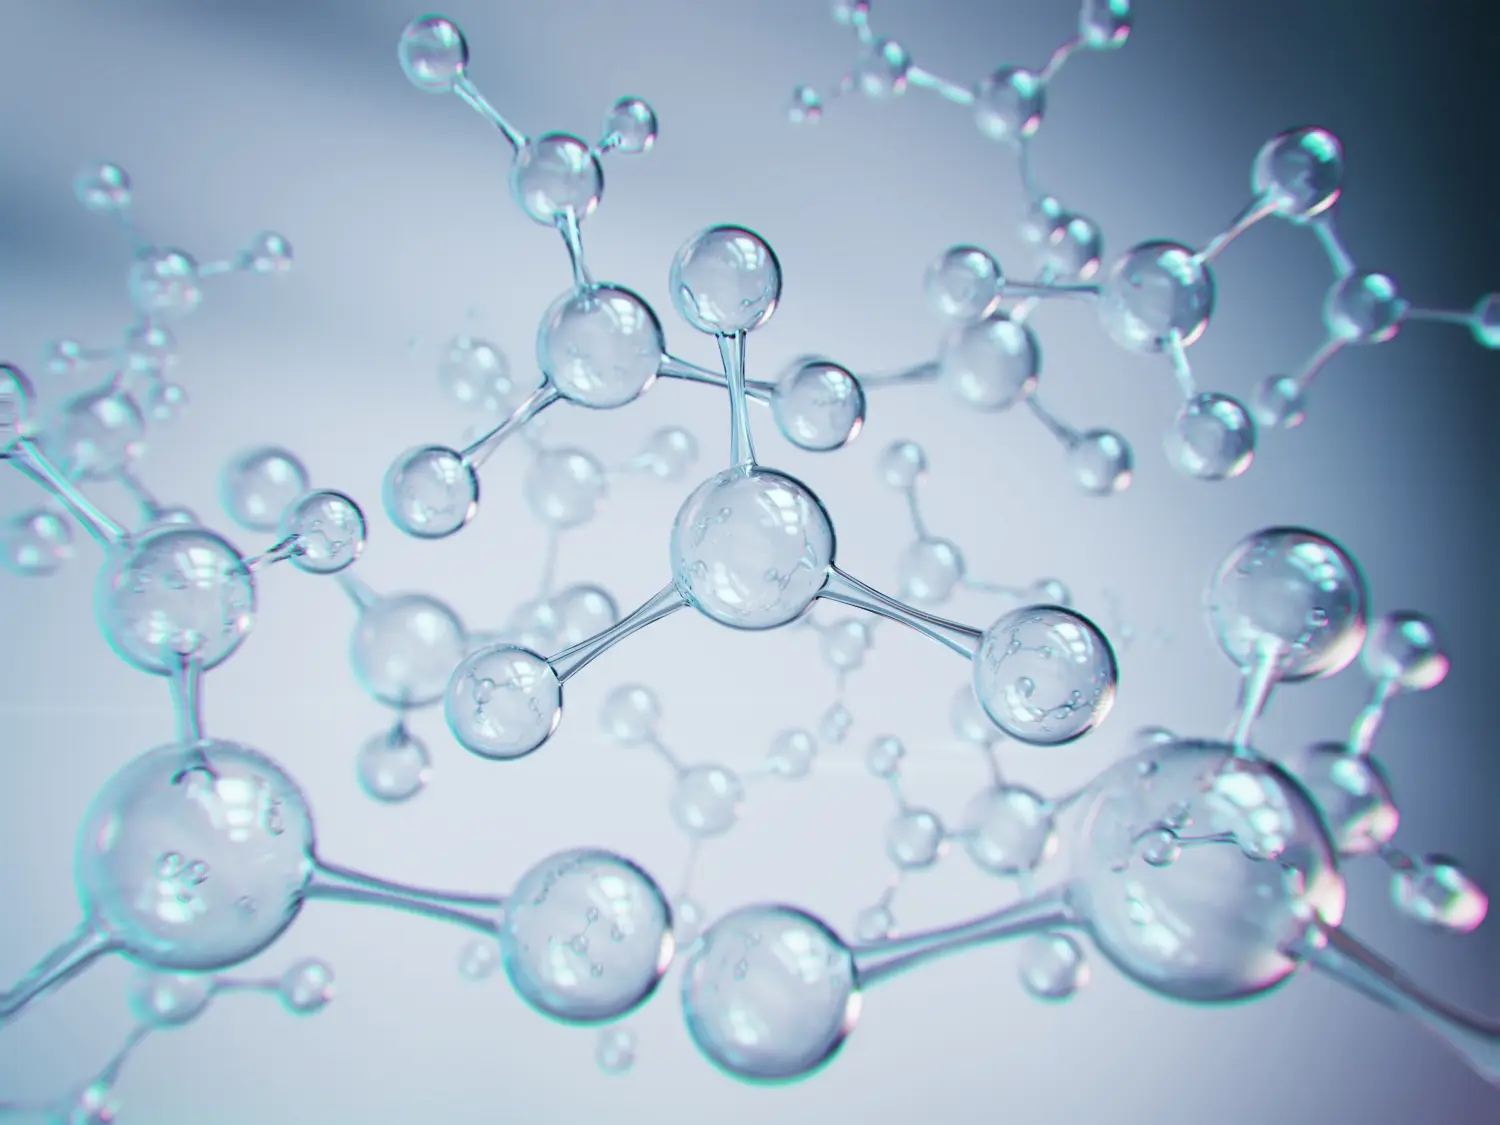 Molekül oder Atom, abstrakte Struktur für wissenschaftlichen oder medizinischen Hintergrund.